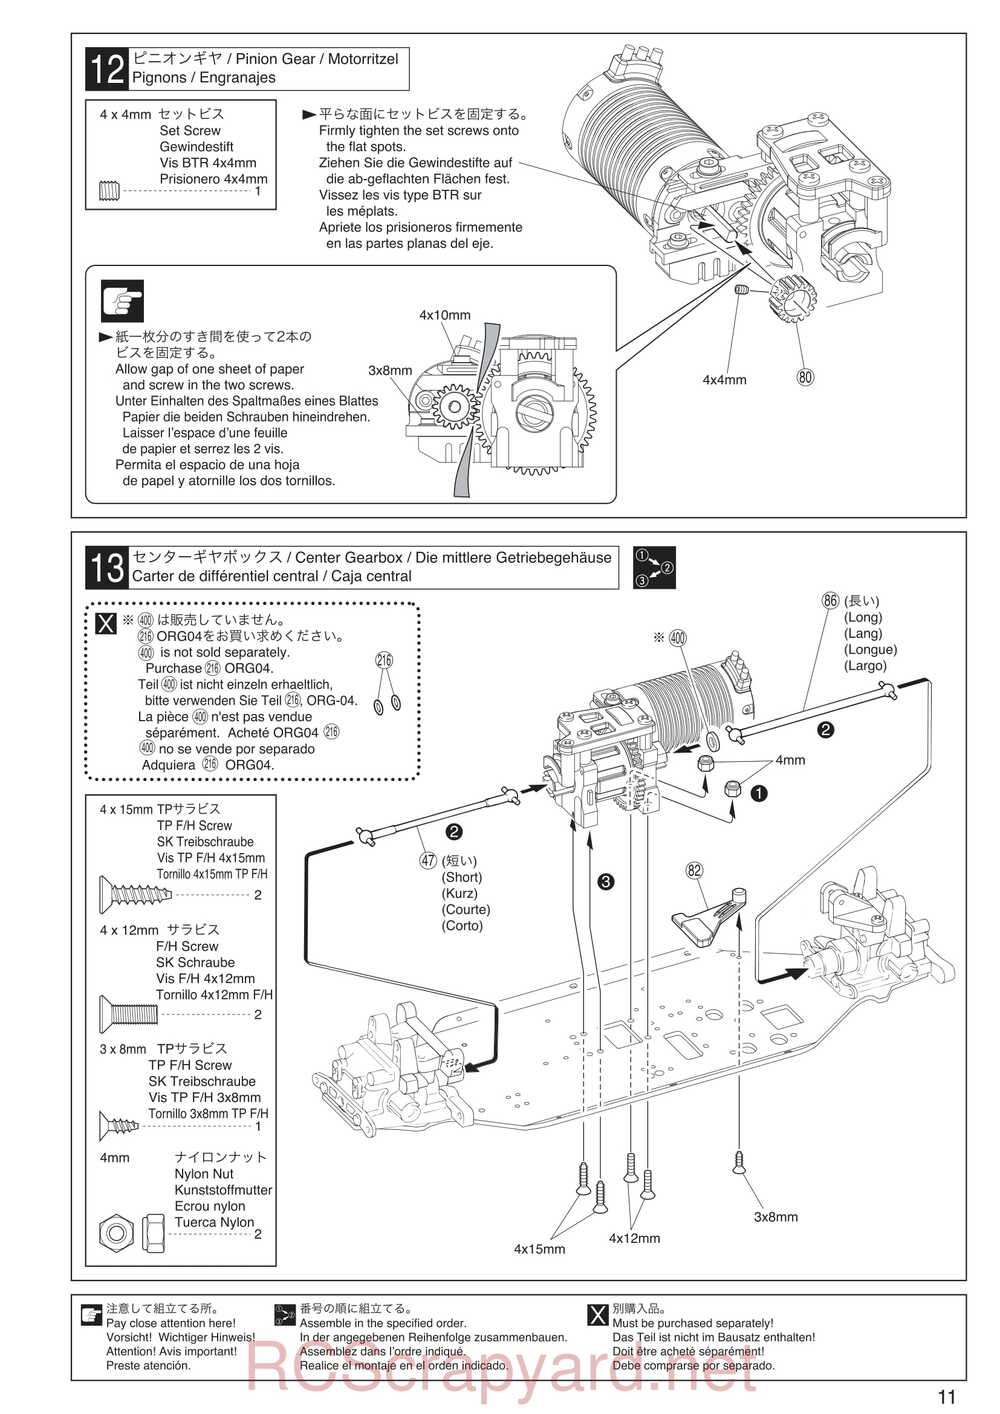 Kyosho - 30935 - Inferno GT2 VE Race-Spec - Manual - Page 11